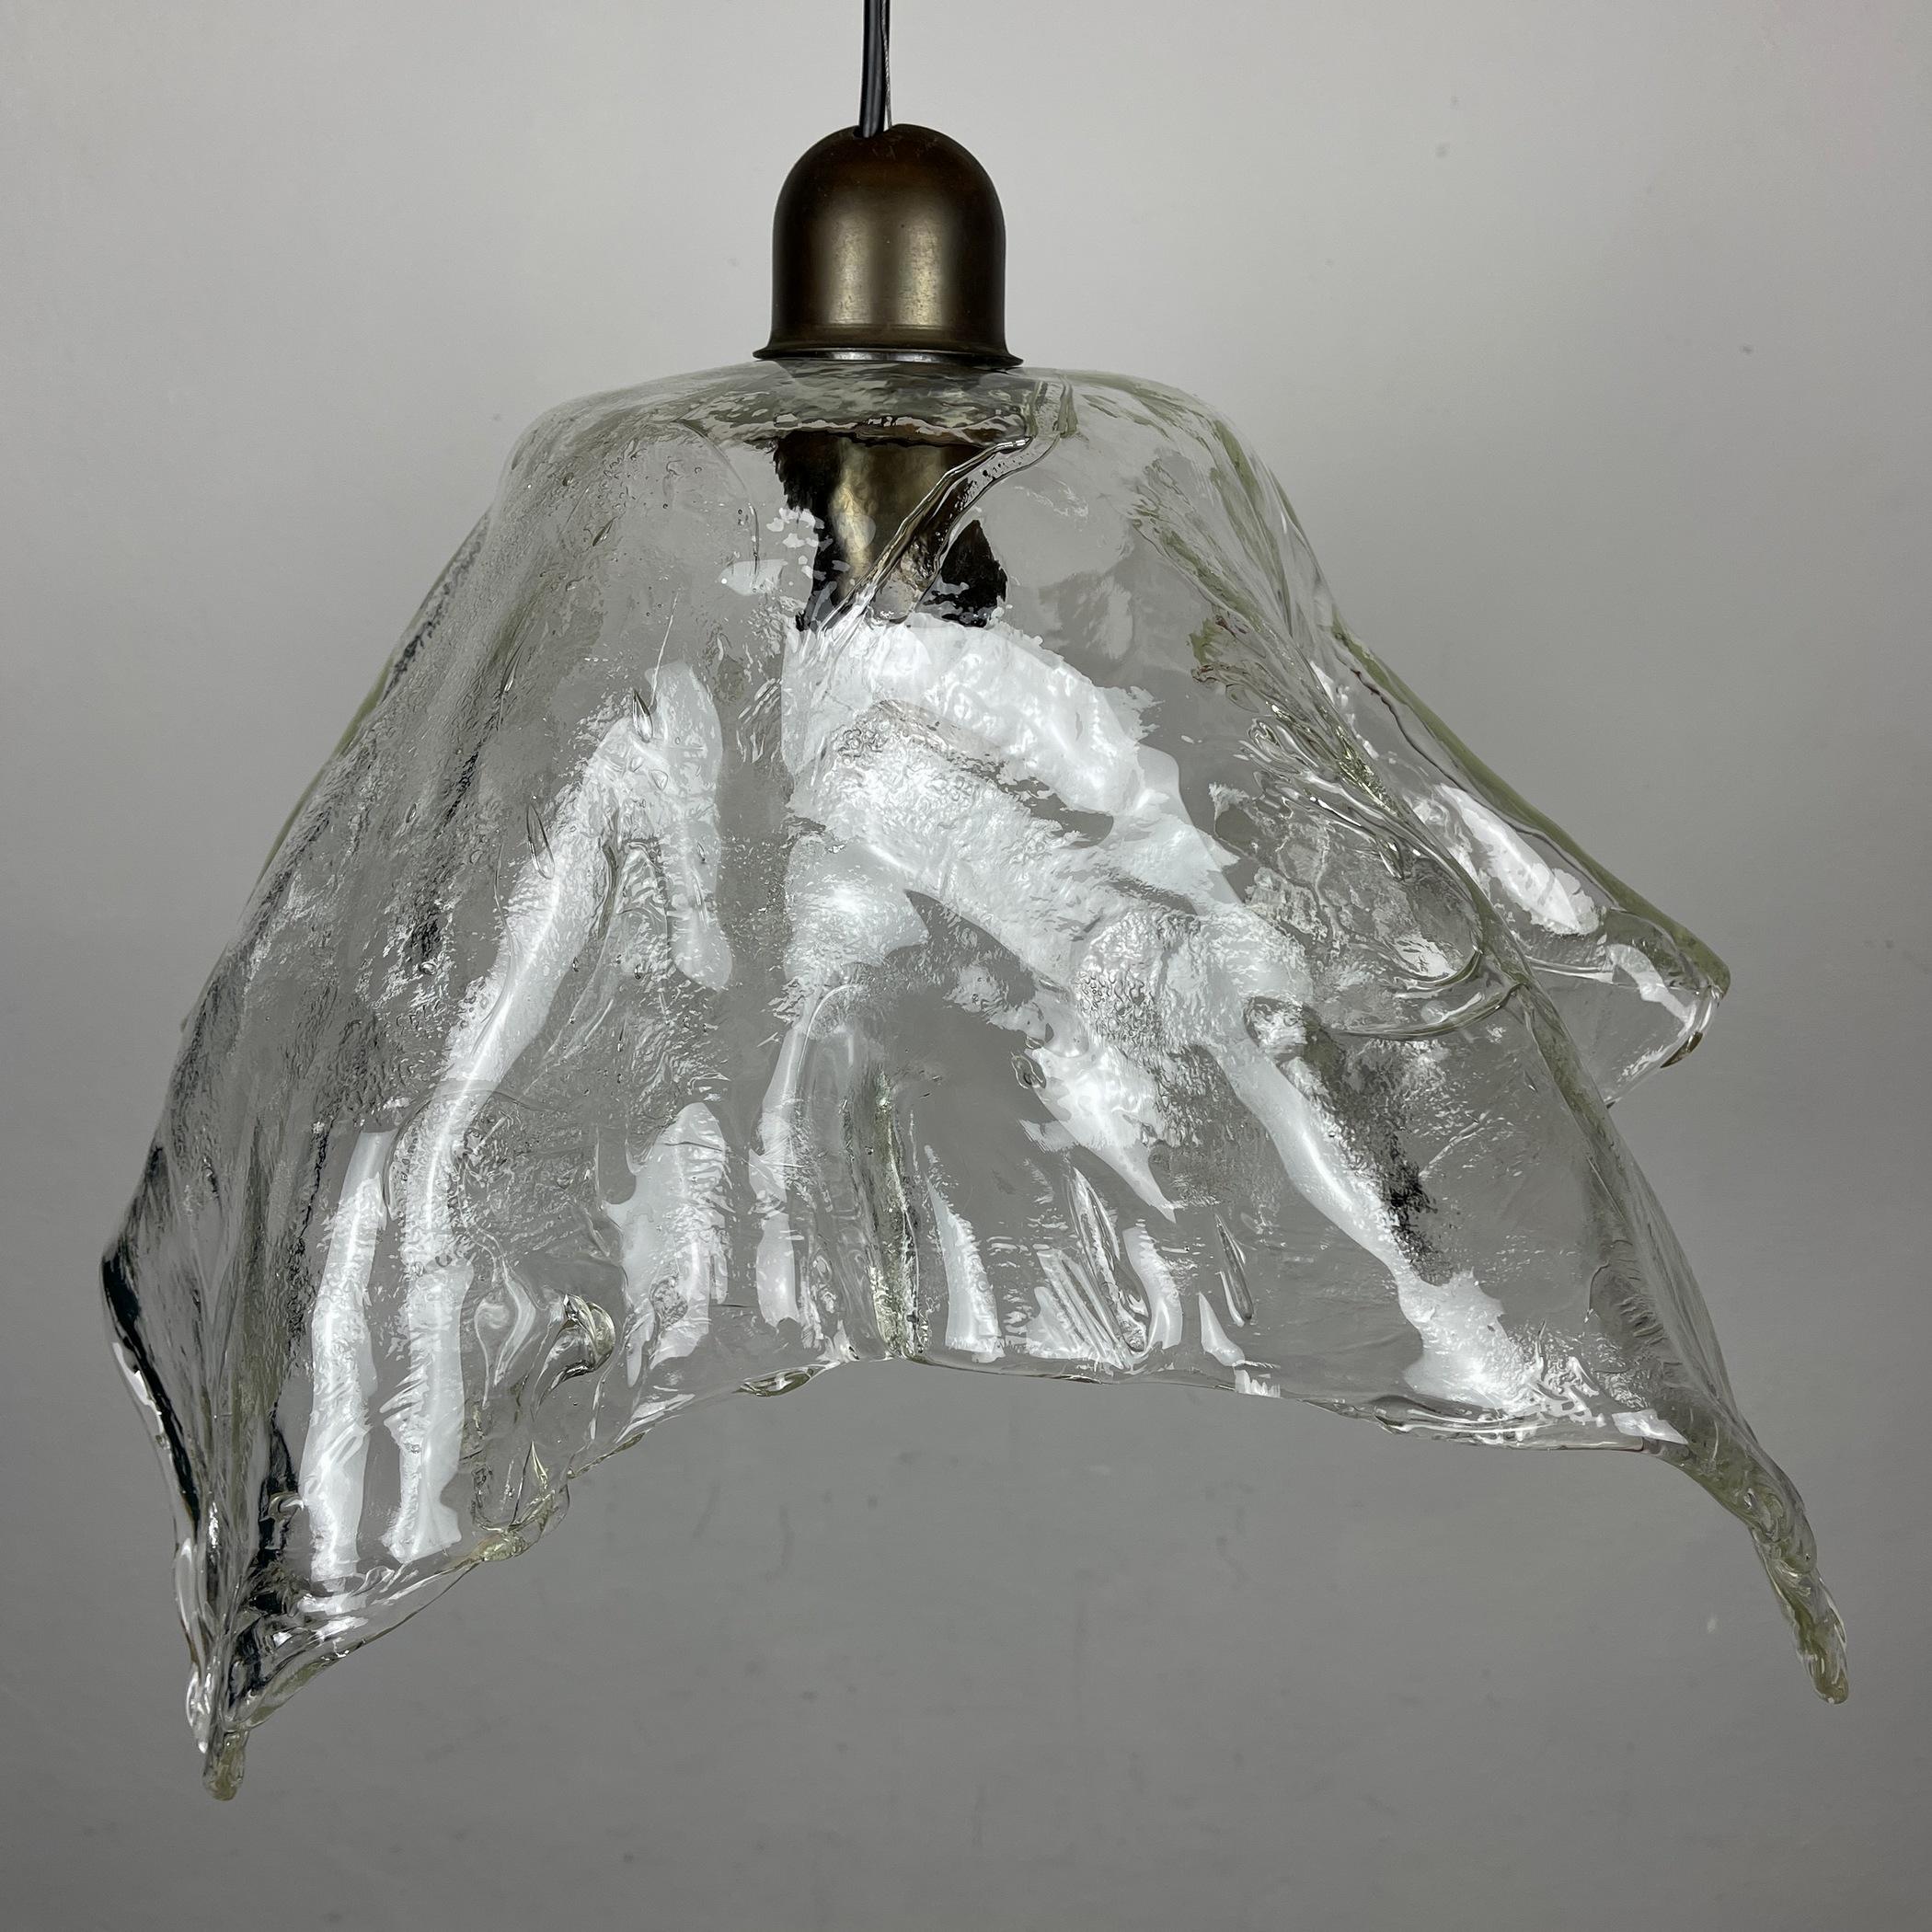 Original Murano Glass Pendant Lamp Fazzoletto by AV Mazzega Italy 1950s For Sale 3